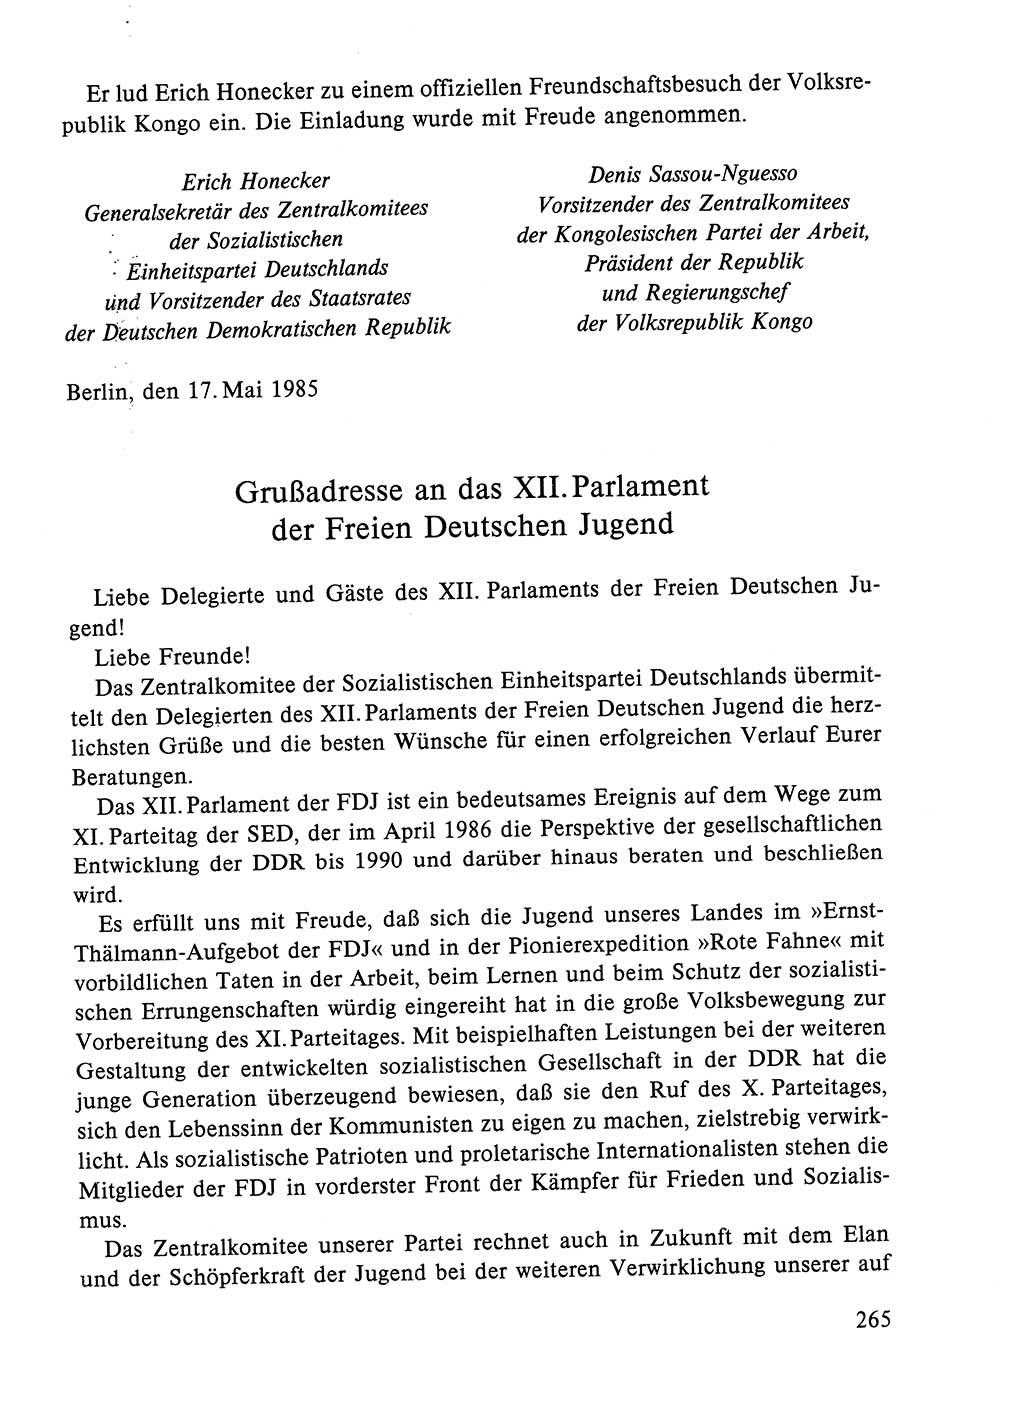 Dokumente der Sozialistischen Einheitspartei Deutschlands (SED) [Deutsche Demokratische Republik (DDR)] 1984-1985, Seite 162 (Dok. SED DDR 1984-1985, S. 162)